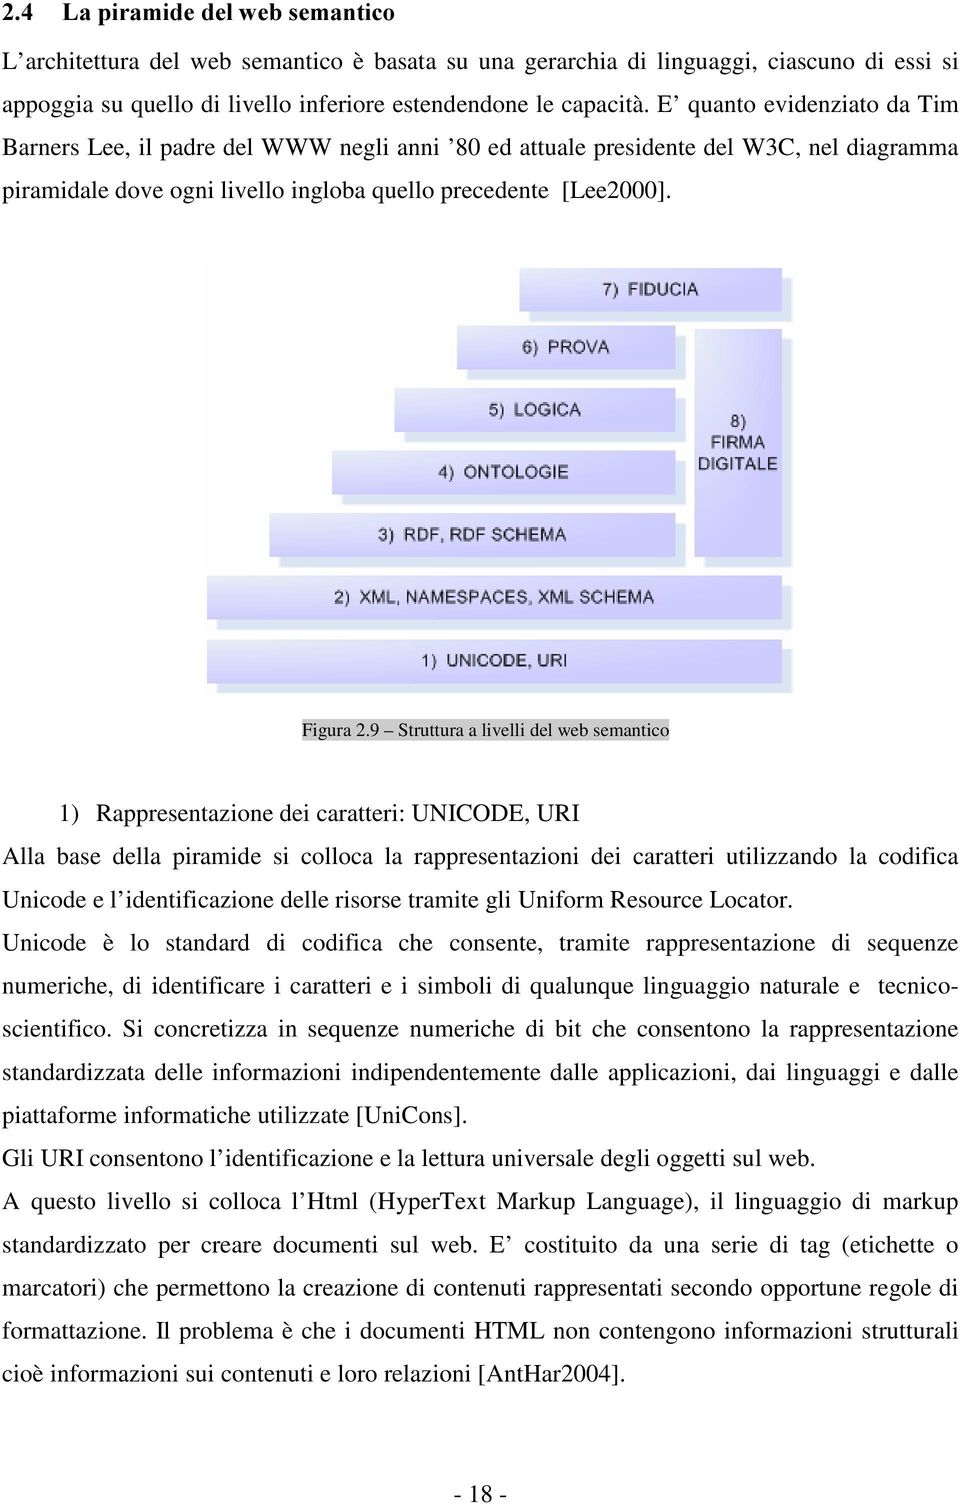 9 Struttura a livelli del web semantico 1) Rappresentazione dei caratteri: UNICODE, URI Alla base della piramide si colloca la rappresentazioni dei caratteri utilizzando la codifica Unicode e l